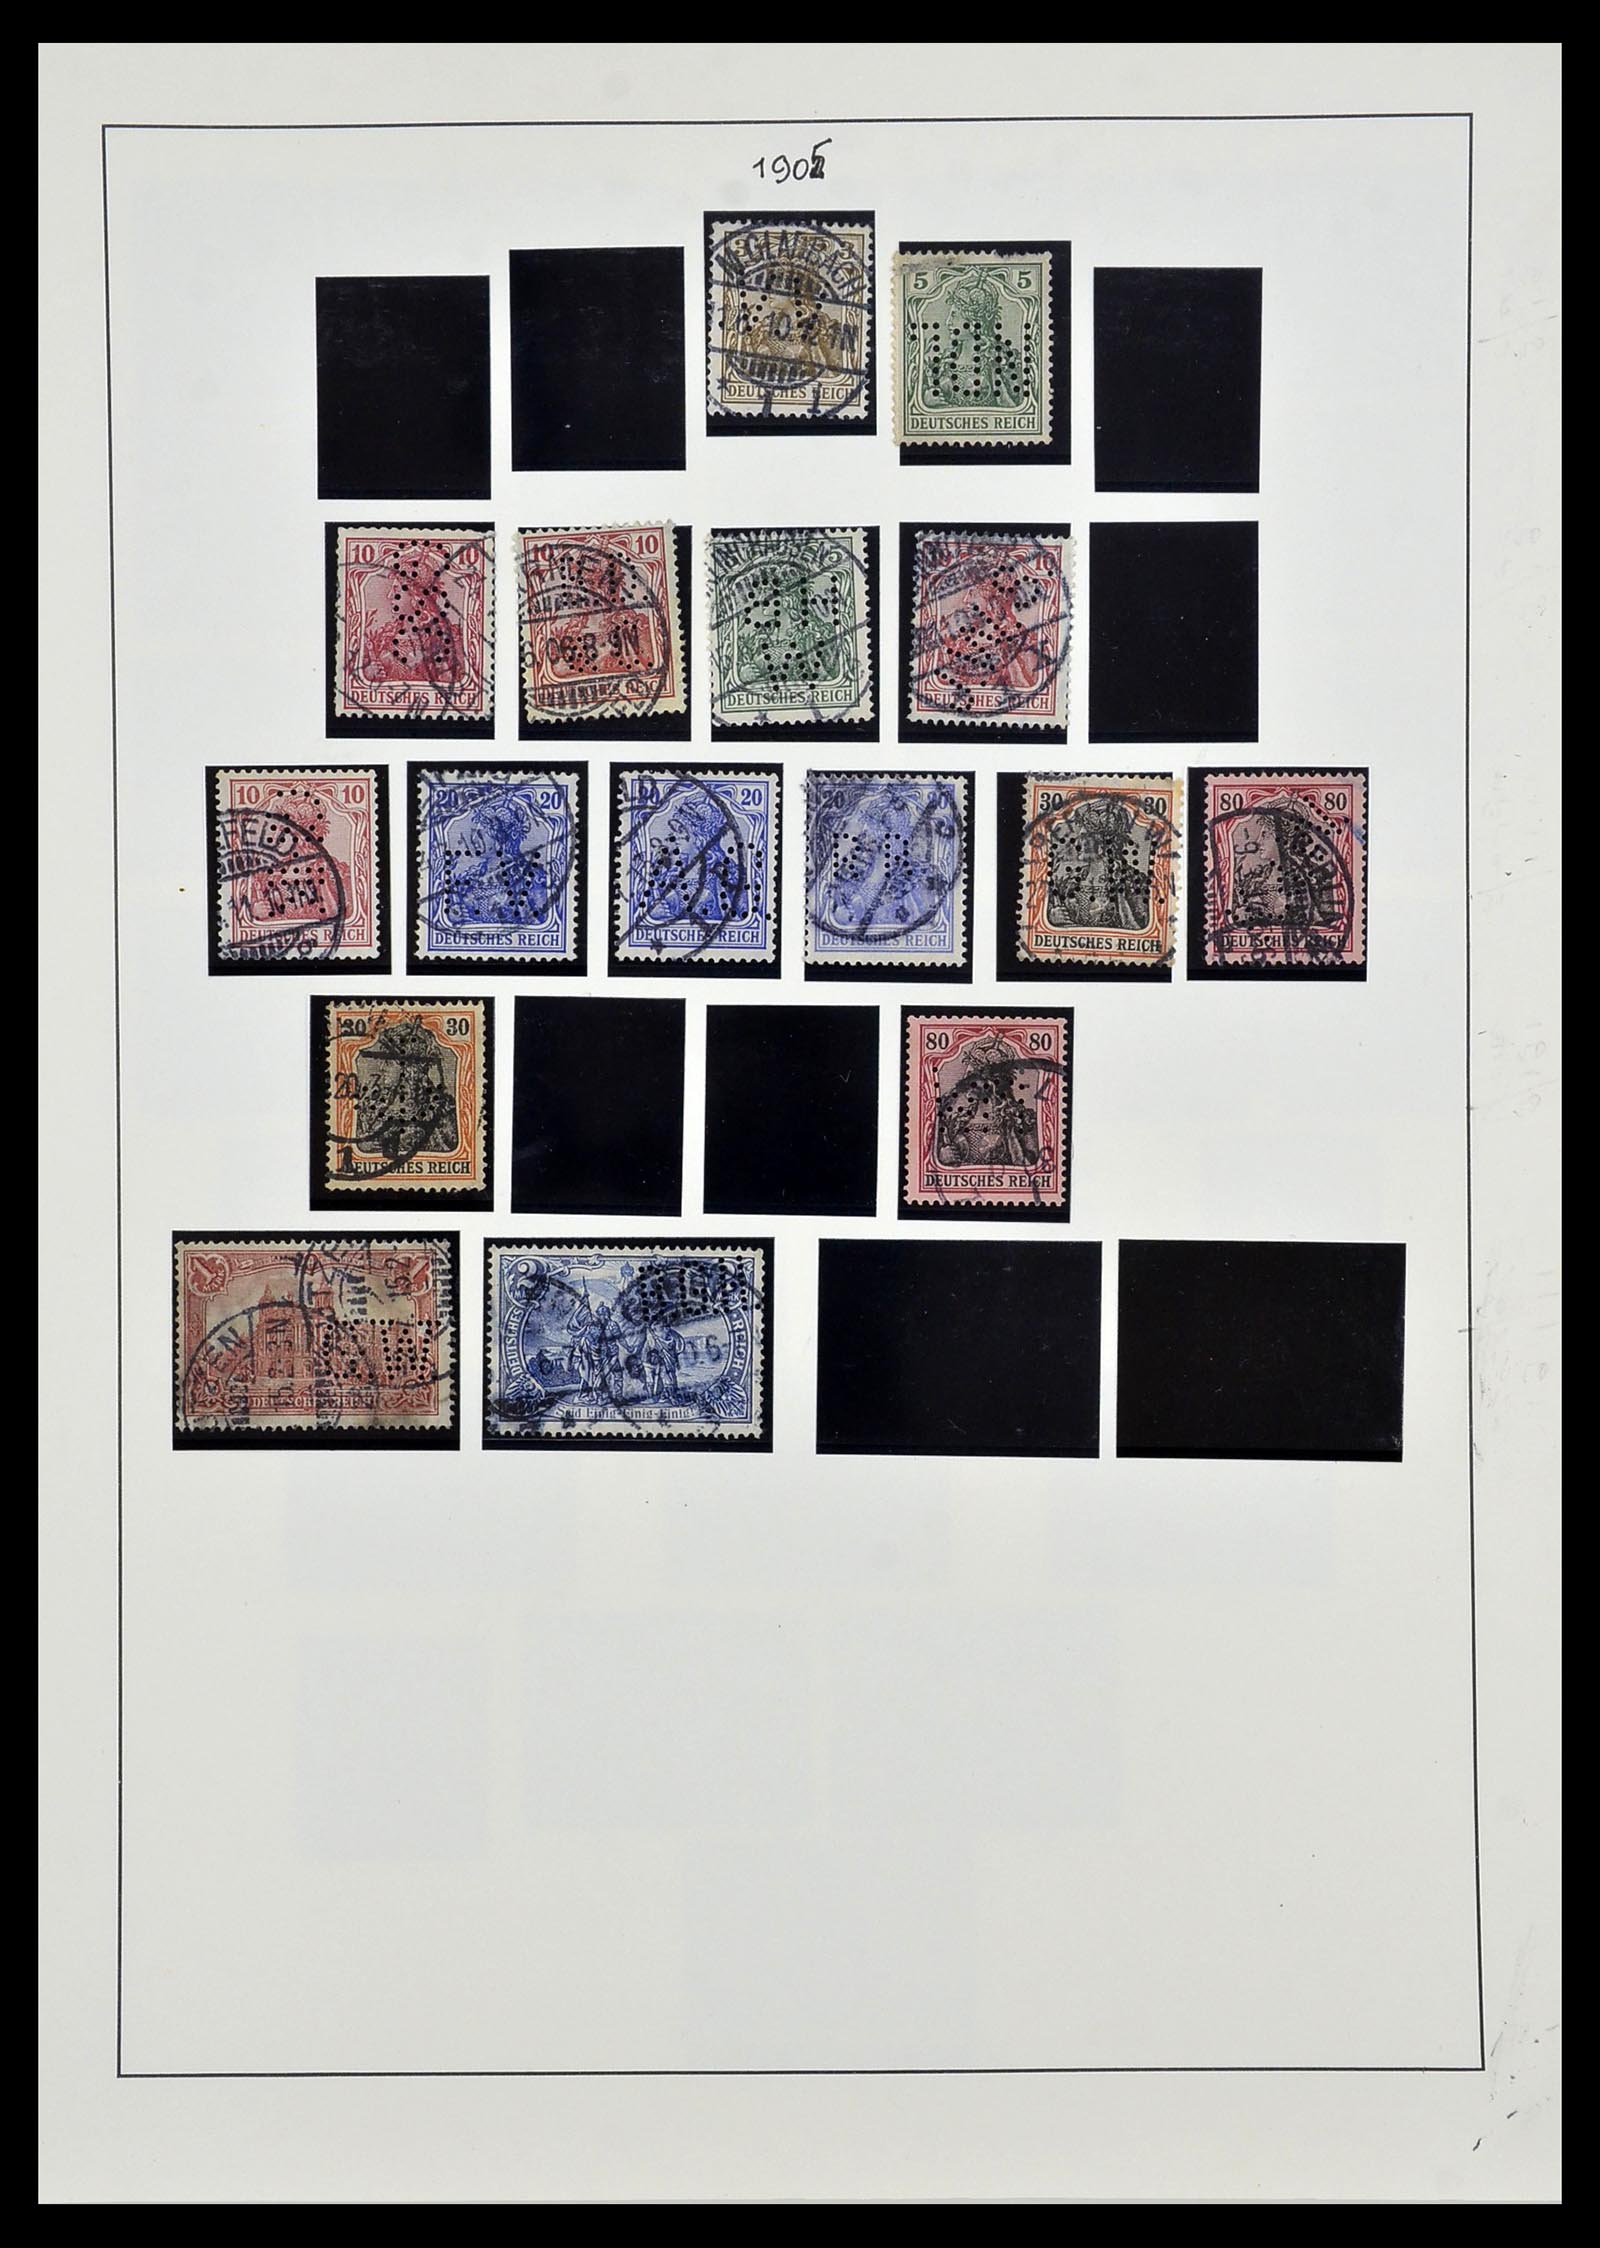 34409 004 - Stamp Collection 34409 German Reich perfins.